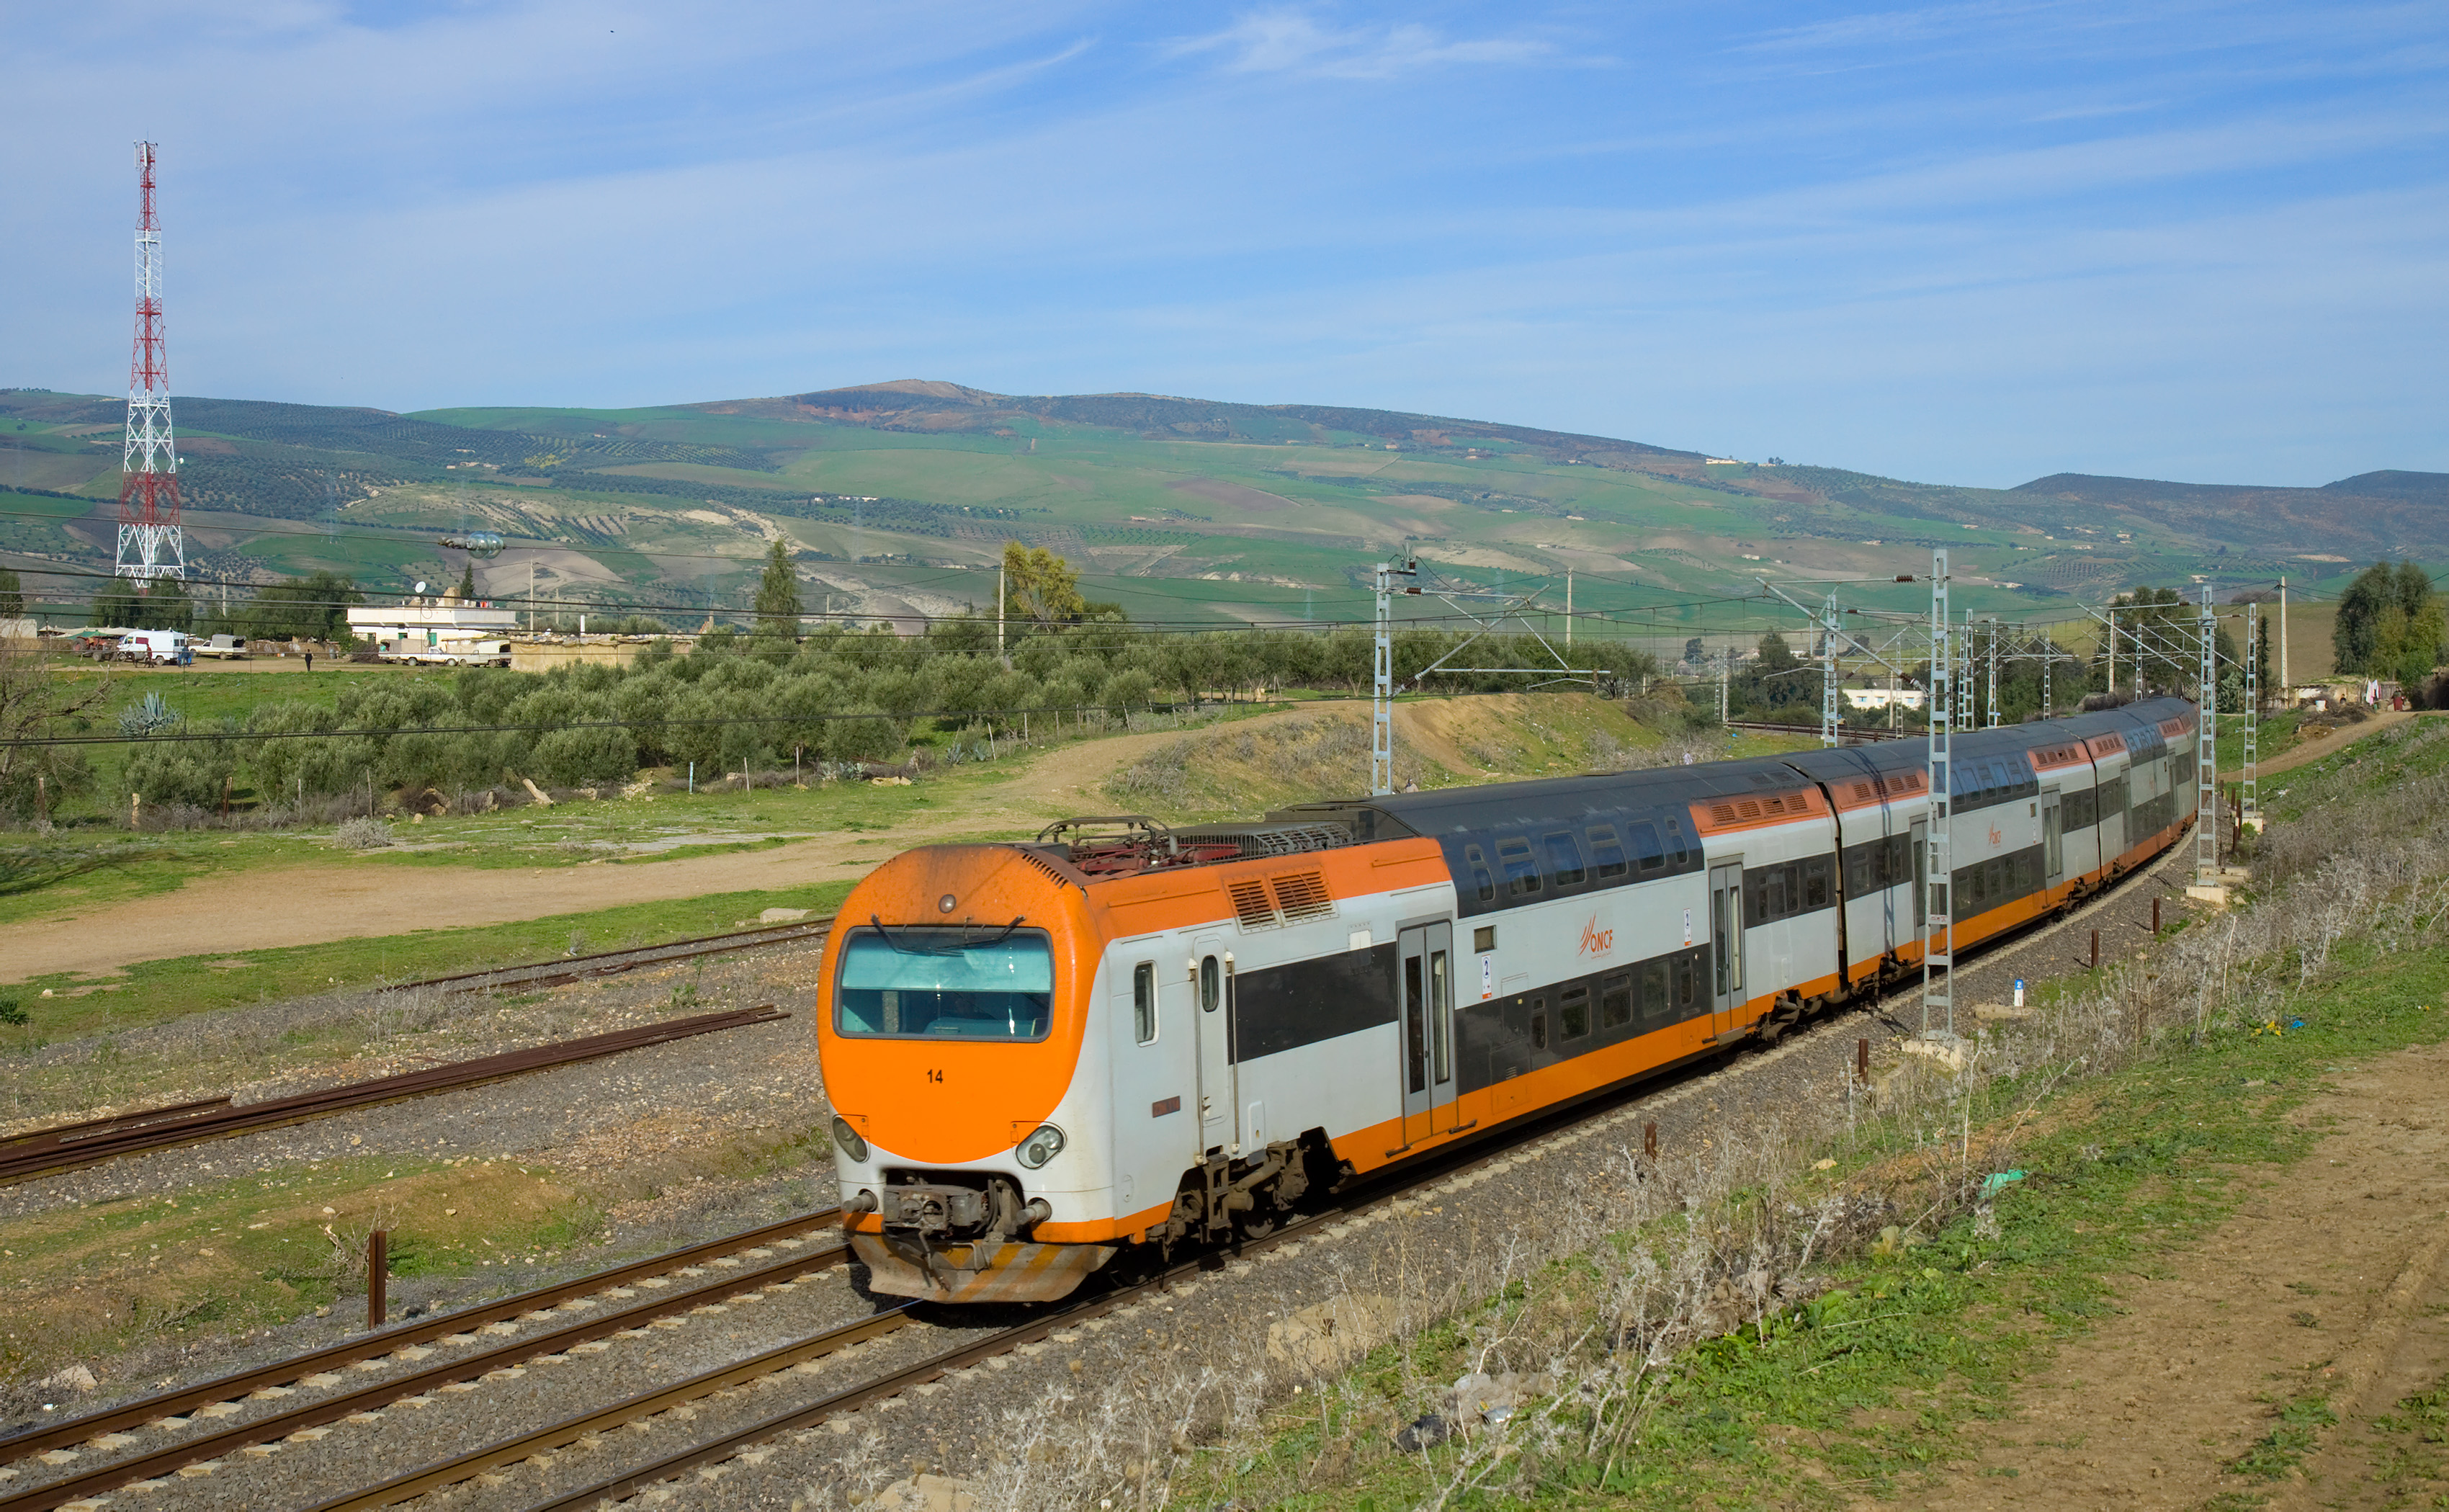 Infrastructure ferroviaire: la BEI accorde un financement de 250 millions d’euros à l'ONCF